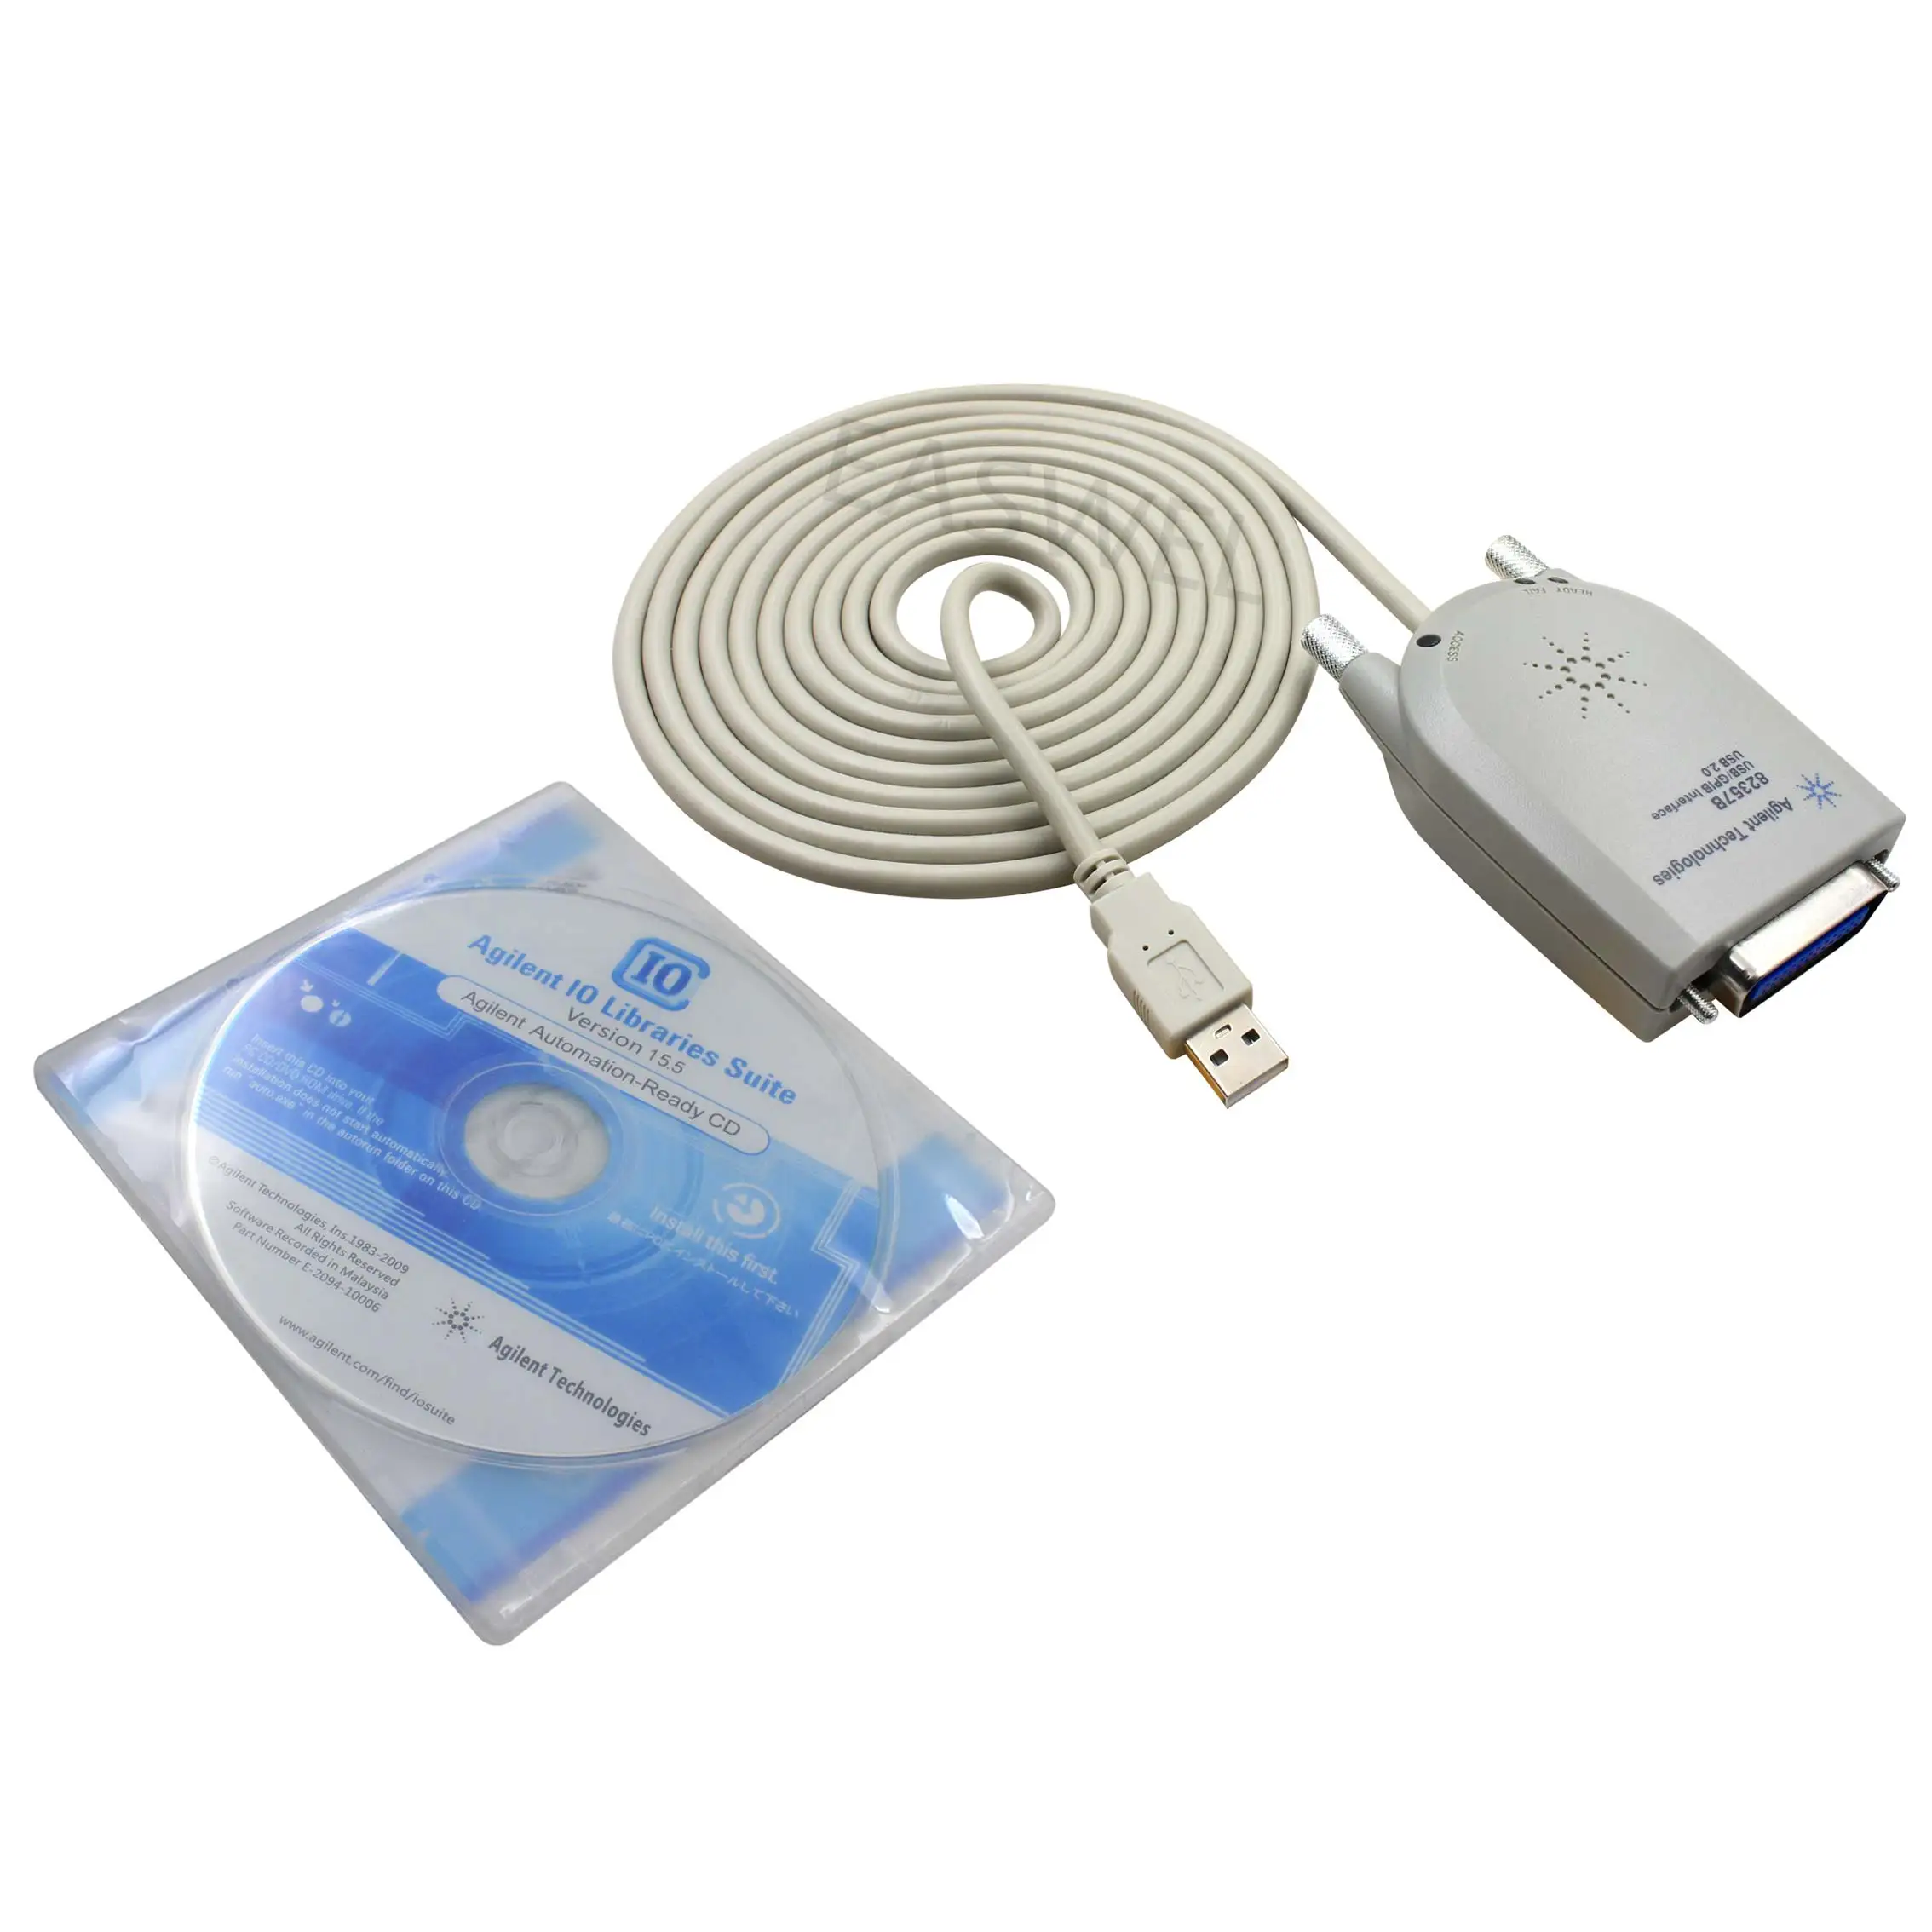 Keysight 82357B USB/GPIB Interface USB 2.0 NEW Still in its box 